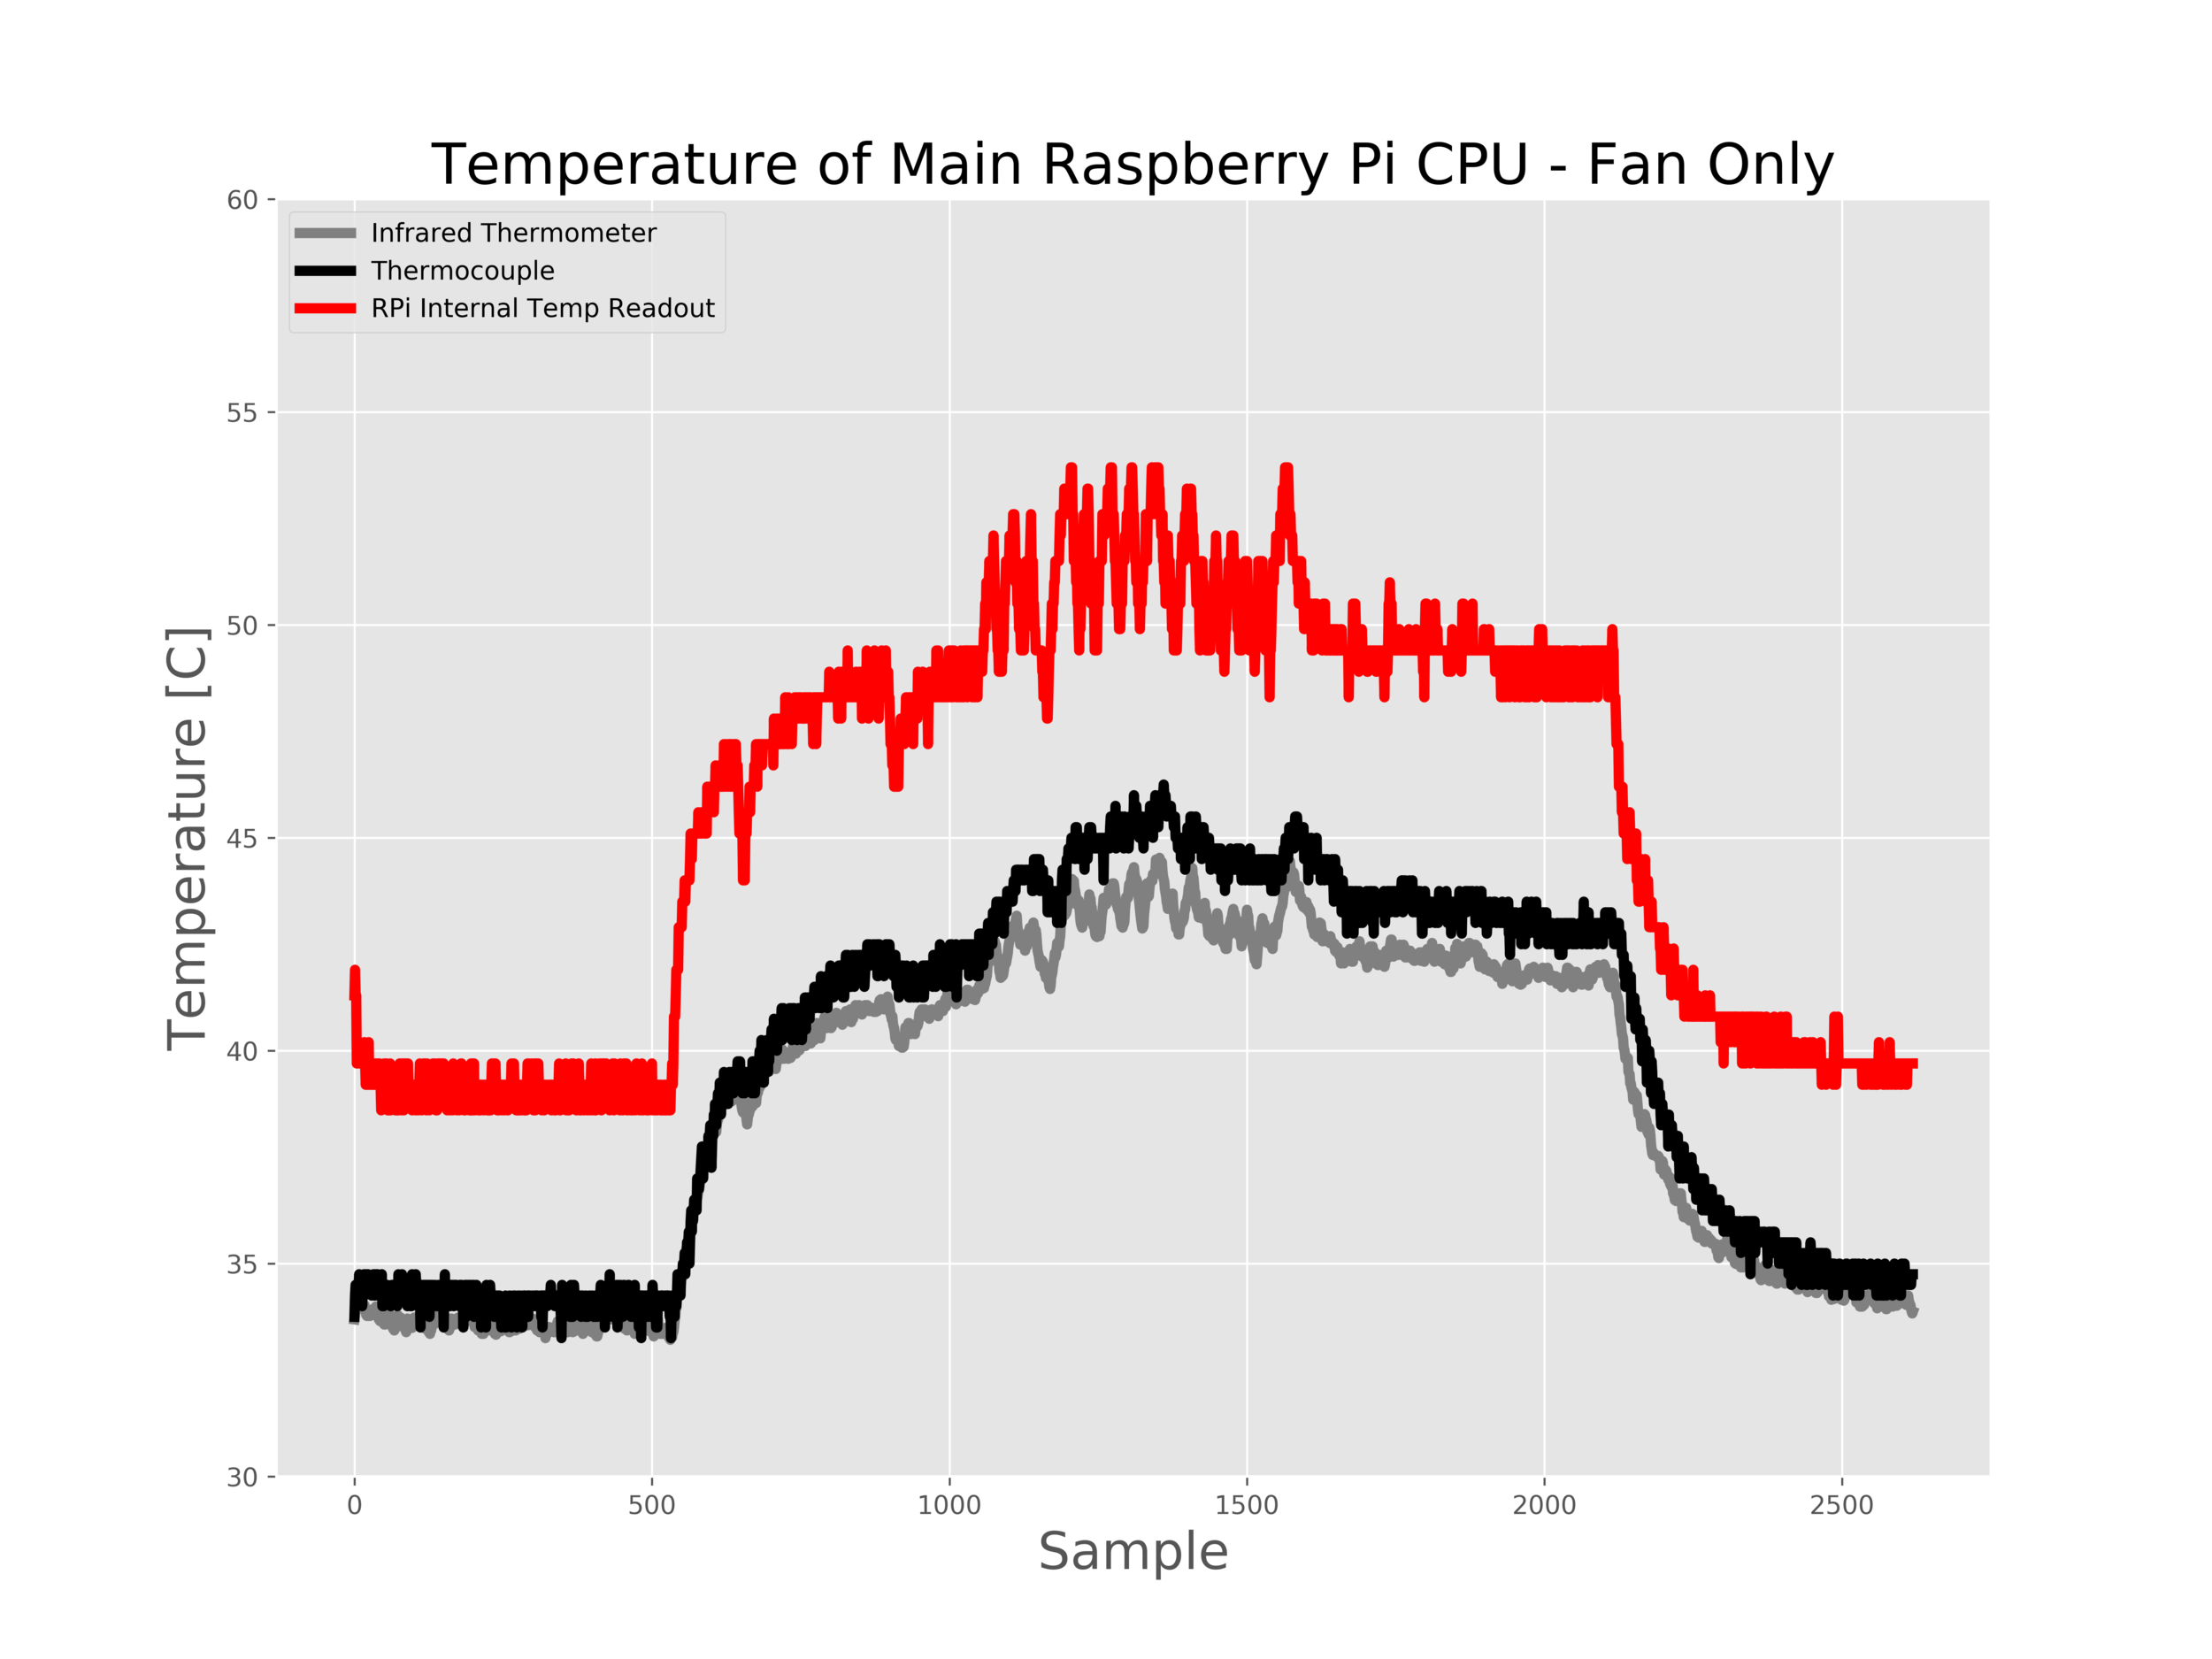 Figure 5: Only Fan Cooling